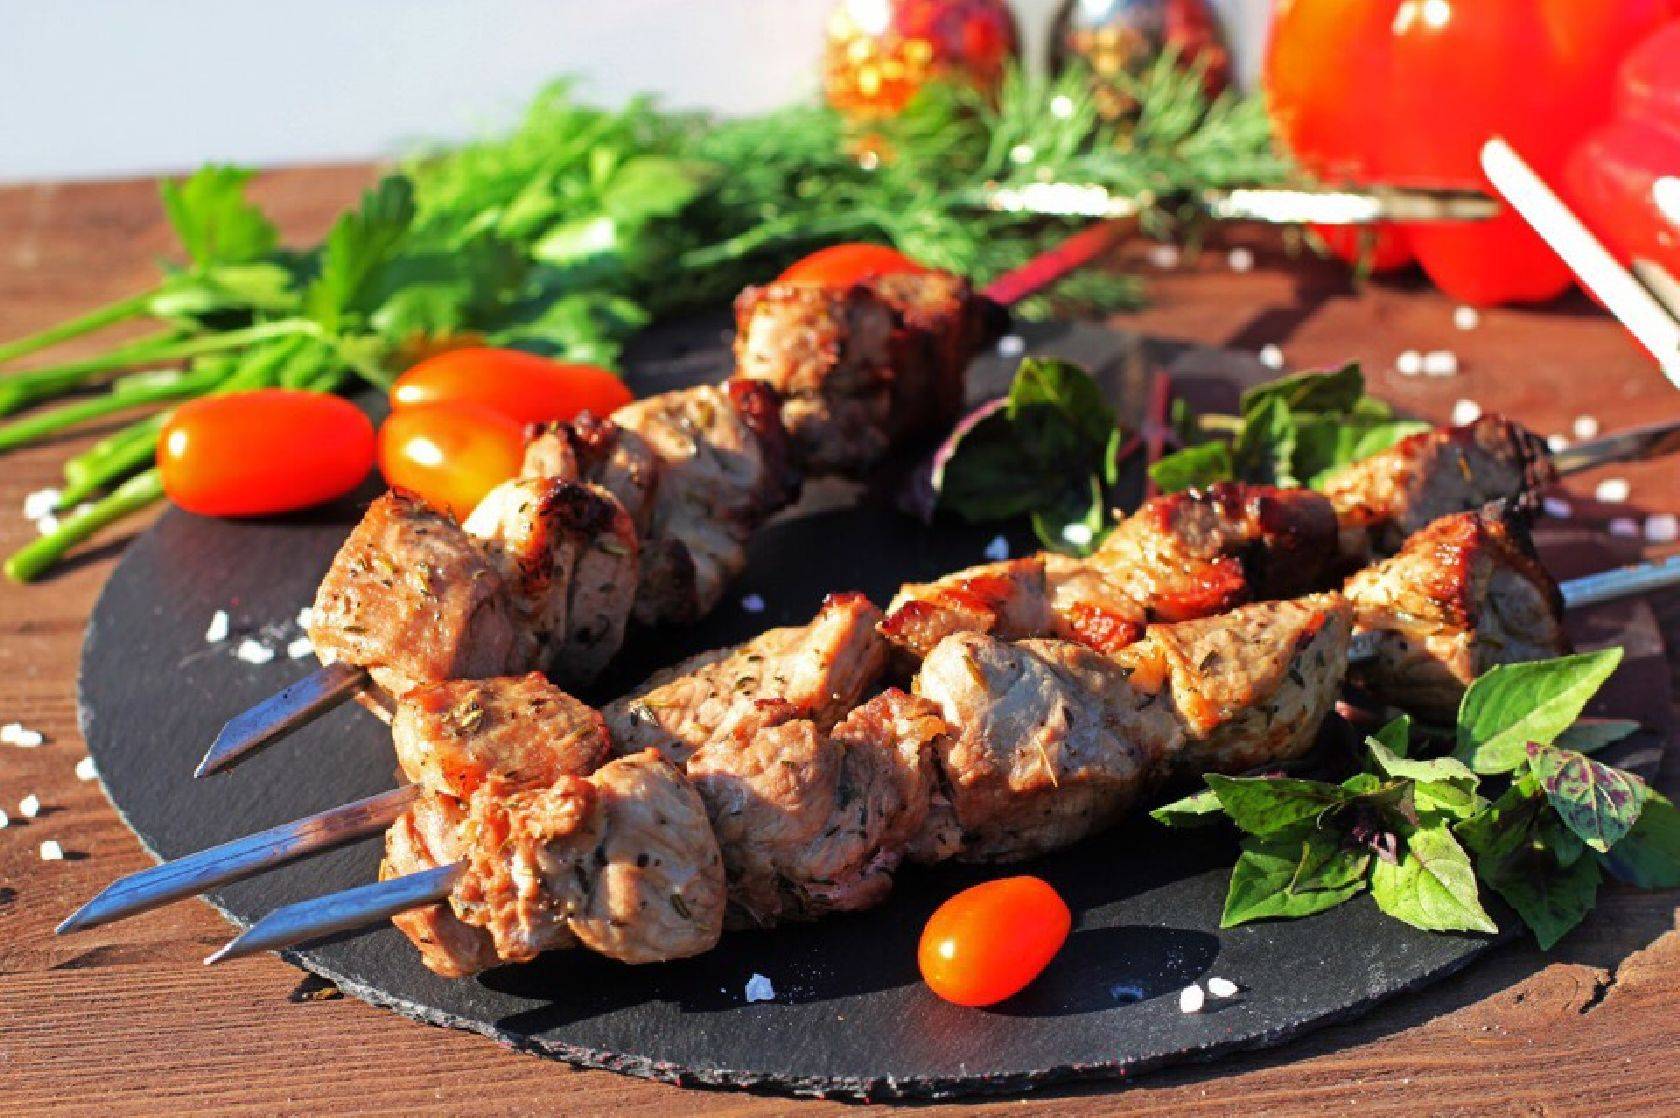 10 рецептов шашлыка из мяса / жарим на мангале и готовим в духовке – статья из рубрики "что съесть" на food.ru